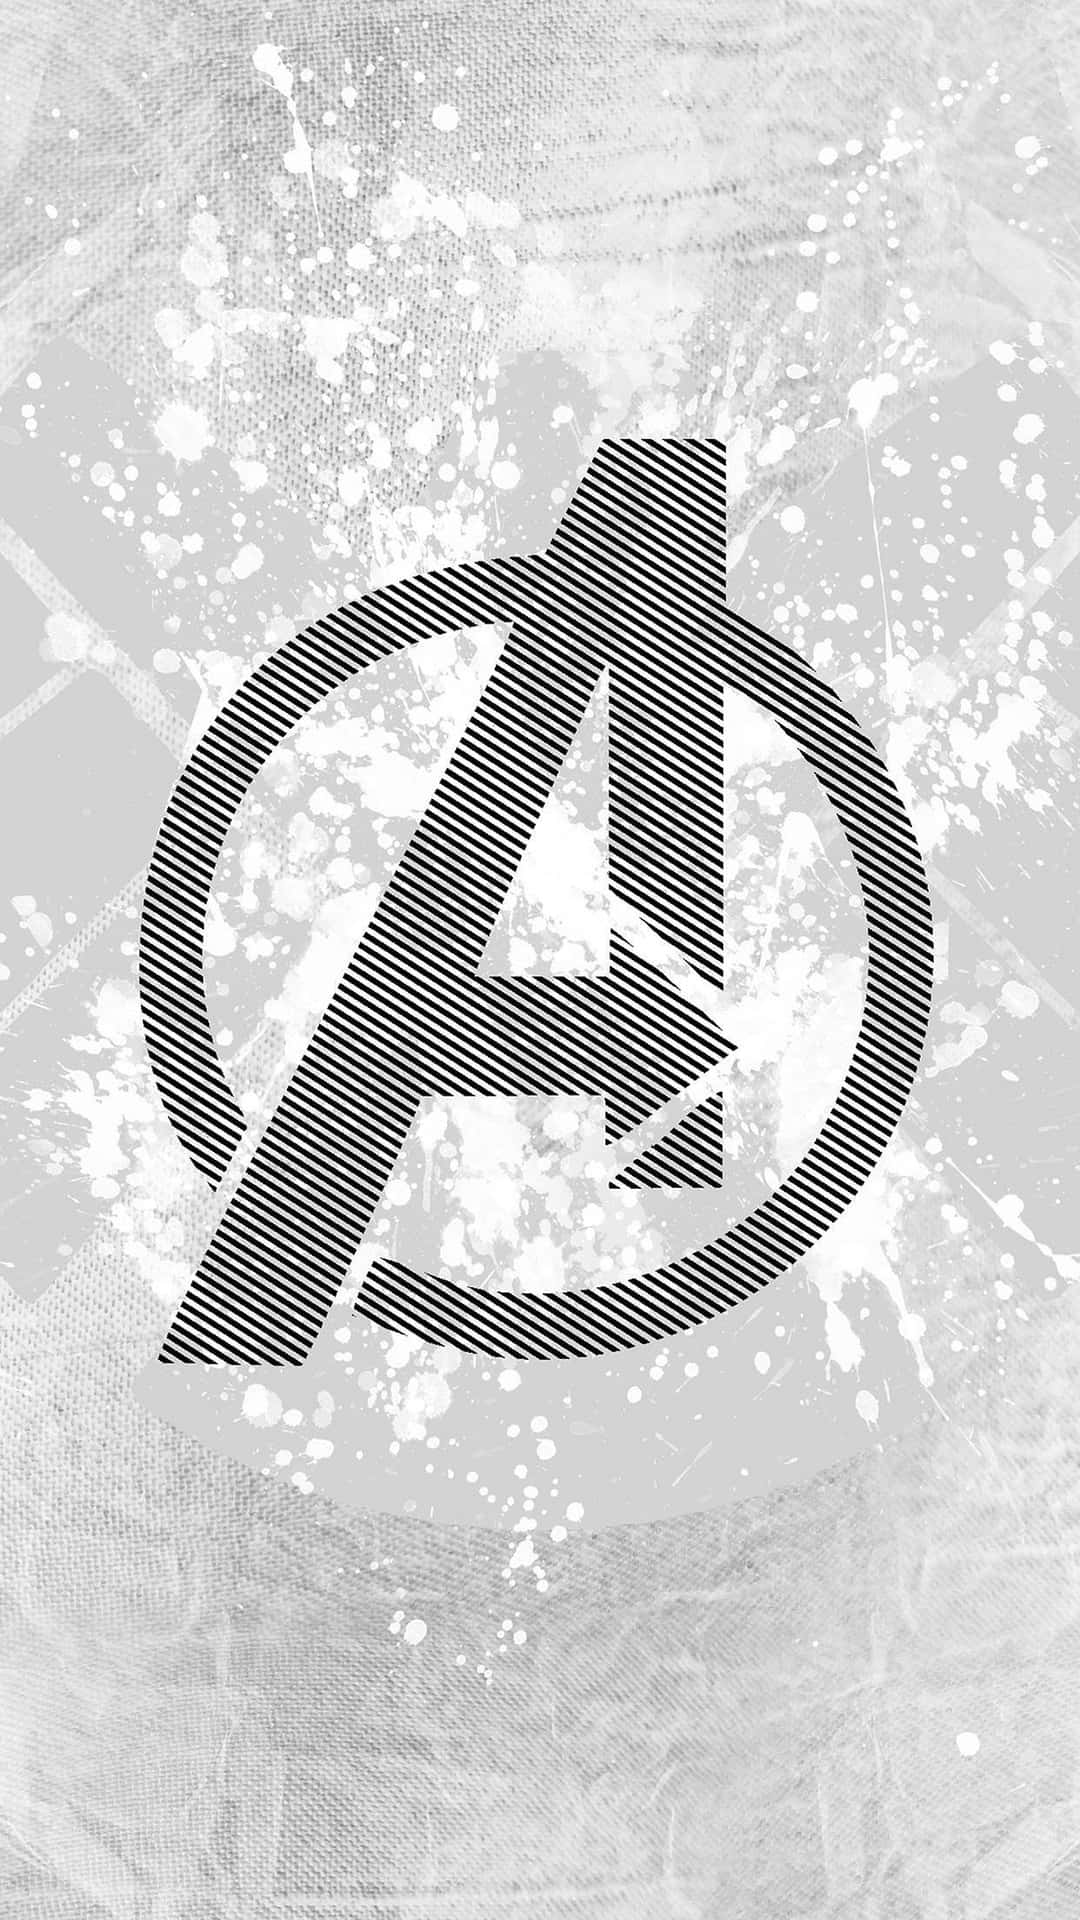 Logomarvel Degli Avengers In Bianco E Nero. Sfondo